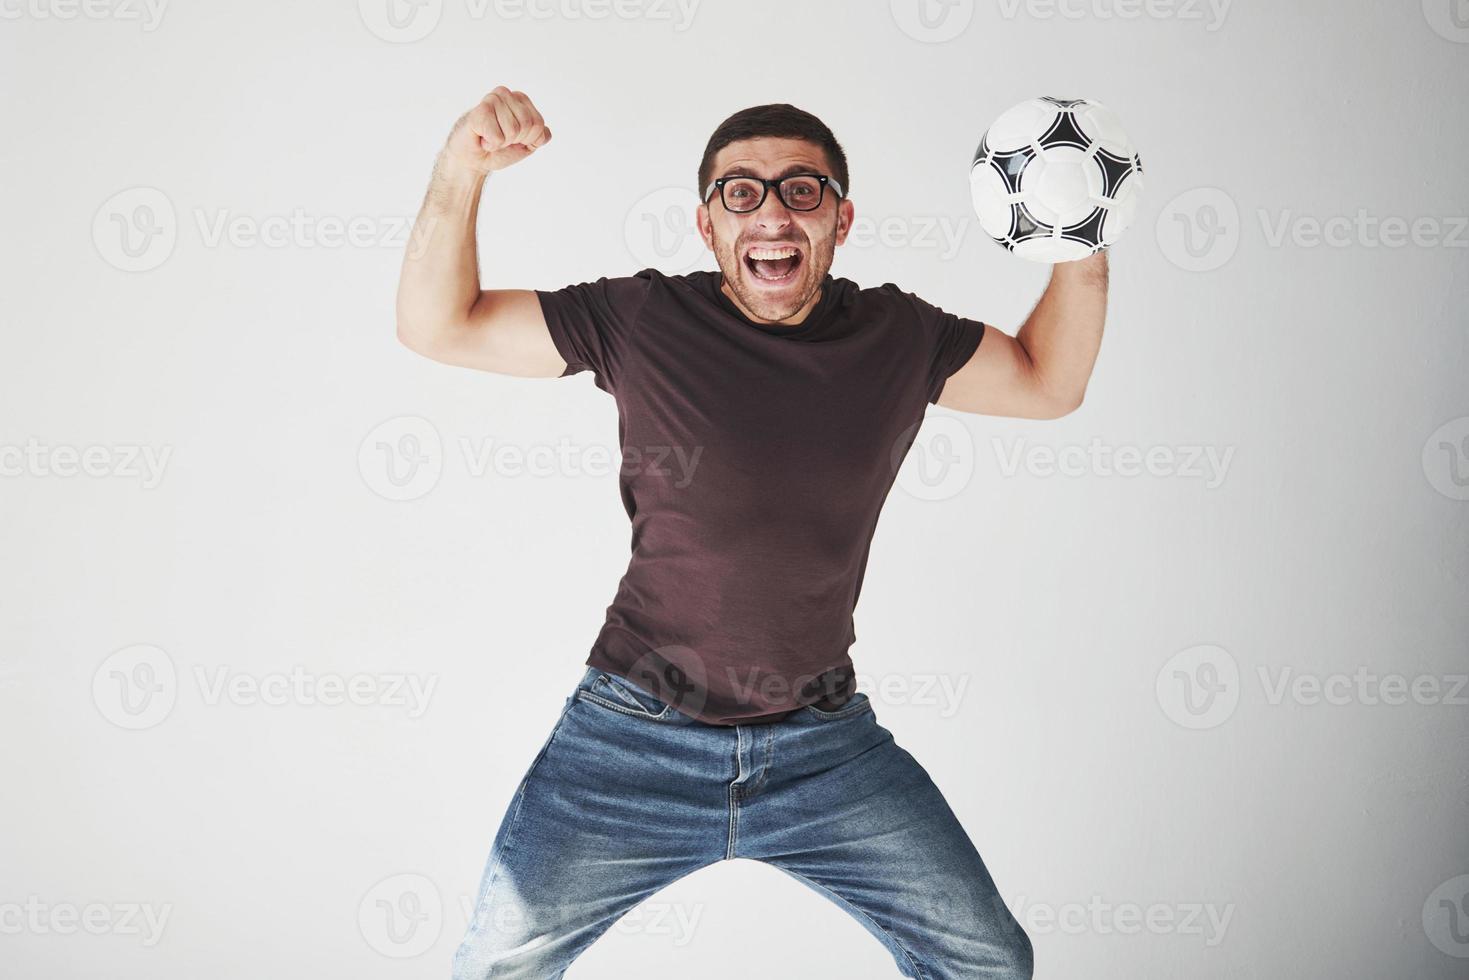 fã de futebol animado com uma bola de futebol isolada no fundo branco. ele pula está feliz e executa vários truques para torcer por seu time favorito foto